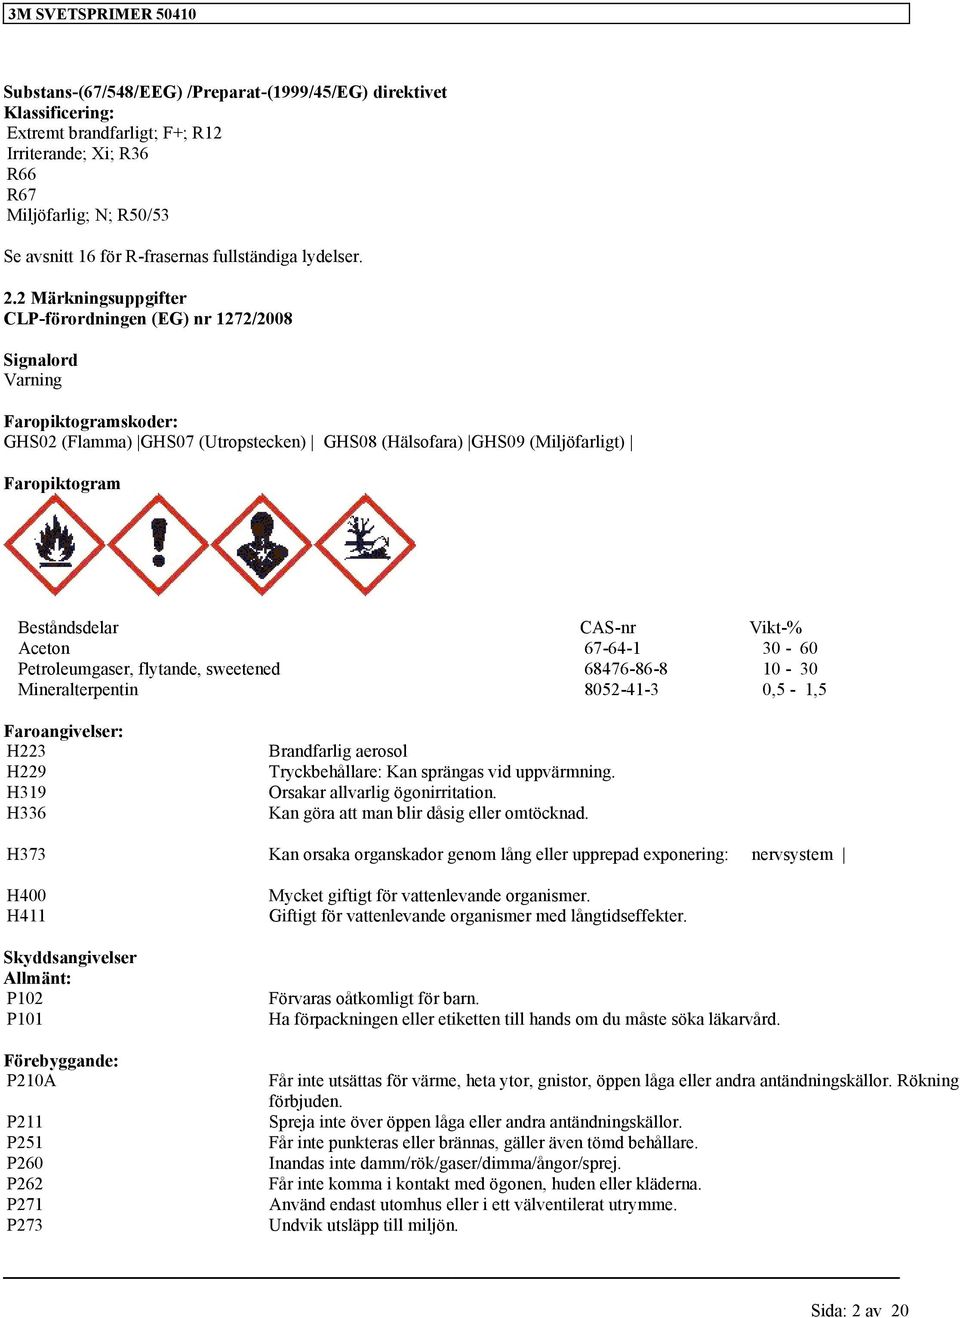 2 Märkningsuppgifter CLP-förordningen (EG) nr 1272/2008 Signalord Varning Faropiktogramskoder: GHS02 (Flamma) GHS07 (Utropstecken) GHS08 (Hälsofara) GHS09 (Miljöfarligt) Faropiktogram Beståndsdelar